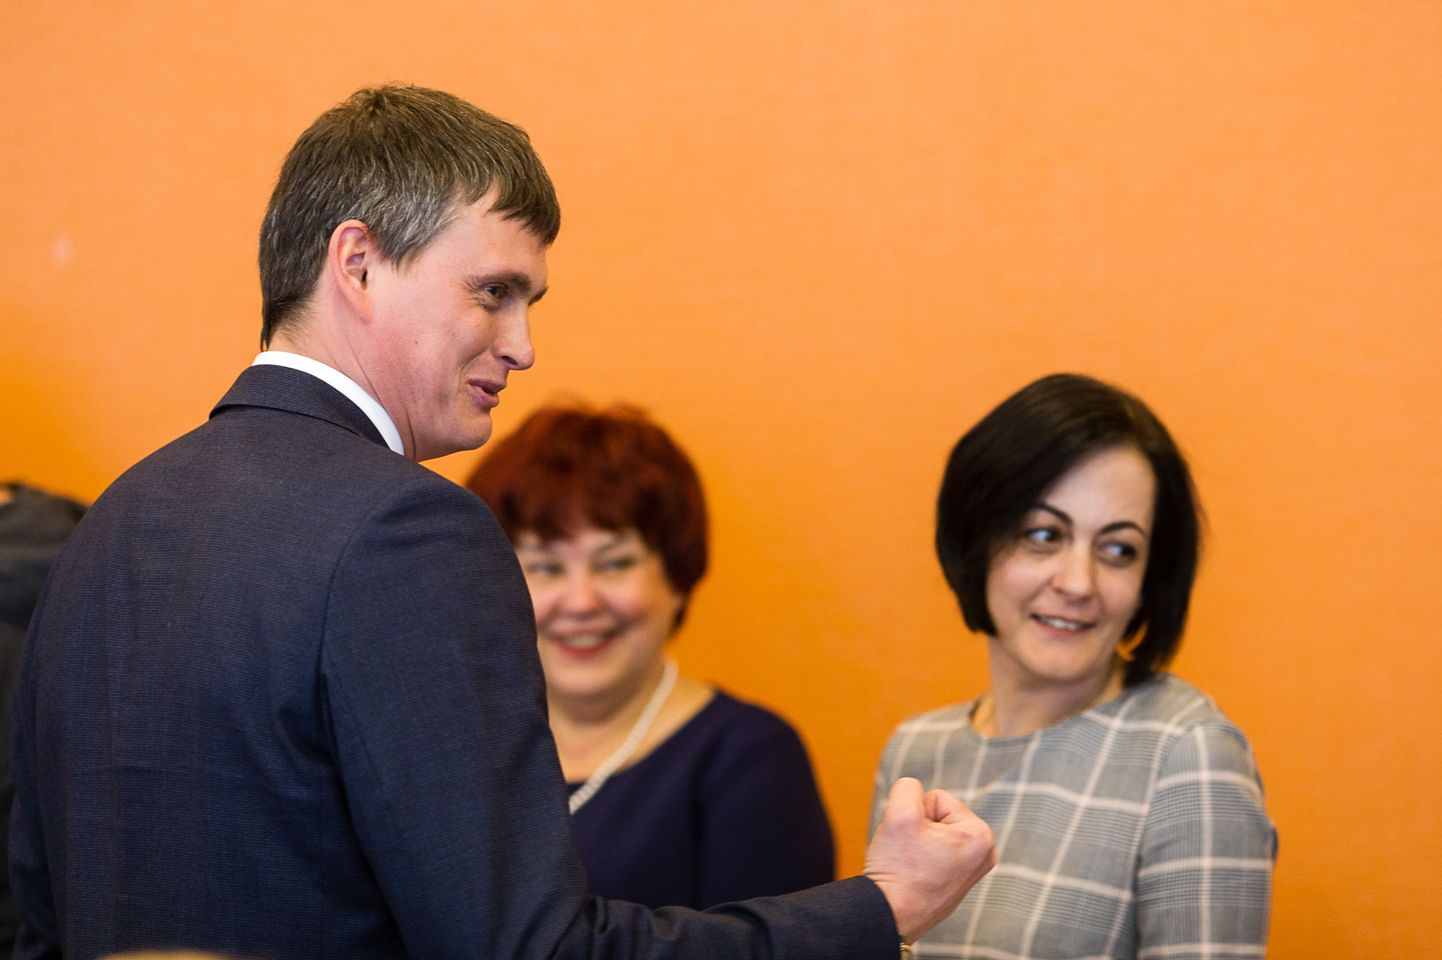 Избранного новым мэром Нарвы Алексея Евграфова считают амбициозным начинающим политиком, но его независимость пока под вопросом. Будучи со школьных лет волейболистом, он сам себя называет командным человеком: "Я не играю в петанк, где каждый за себя".